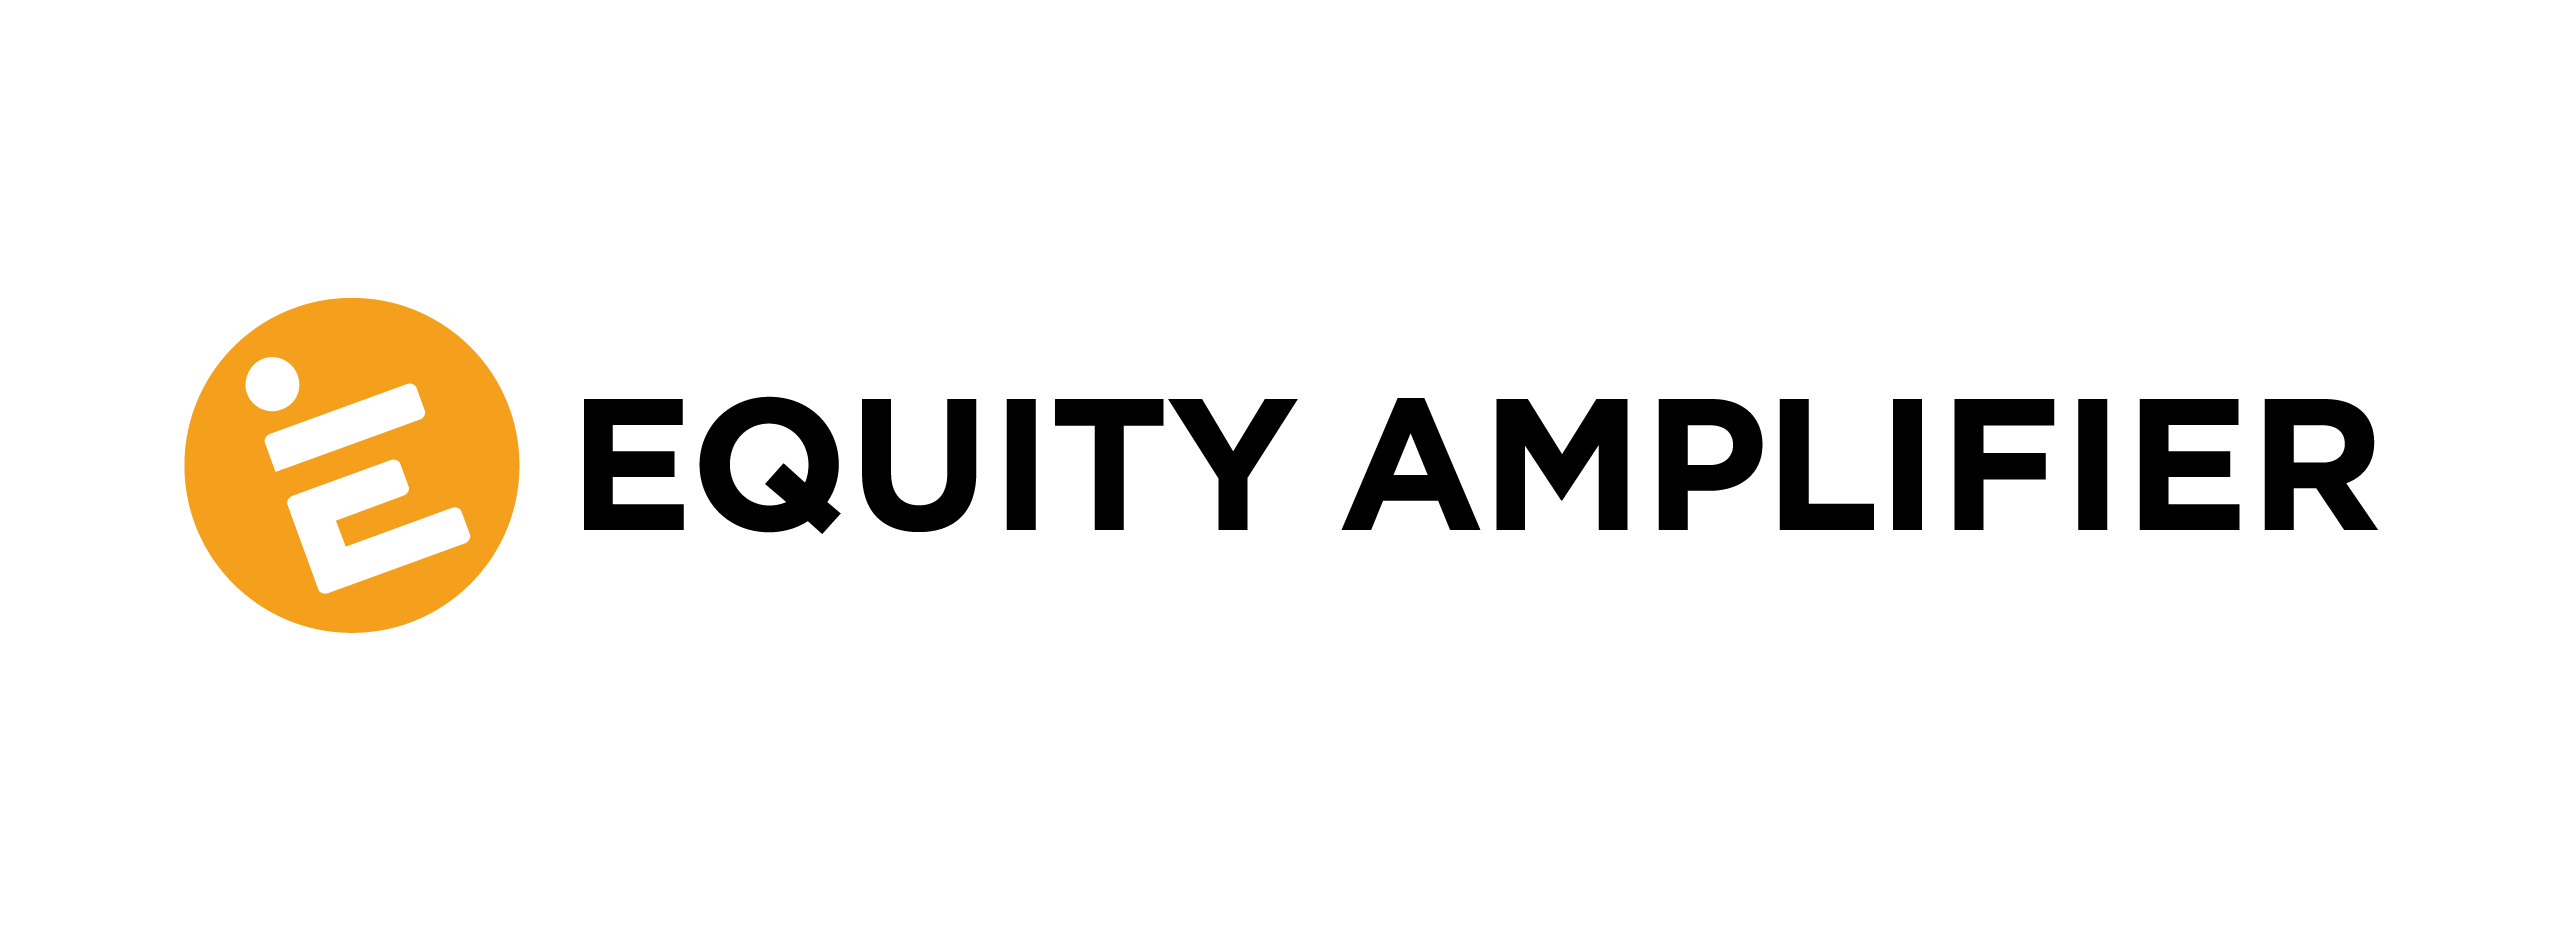 Equity Amplifier